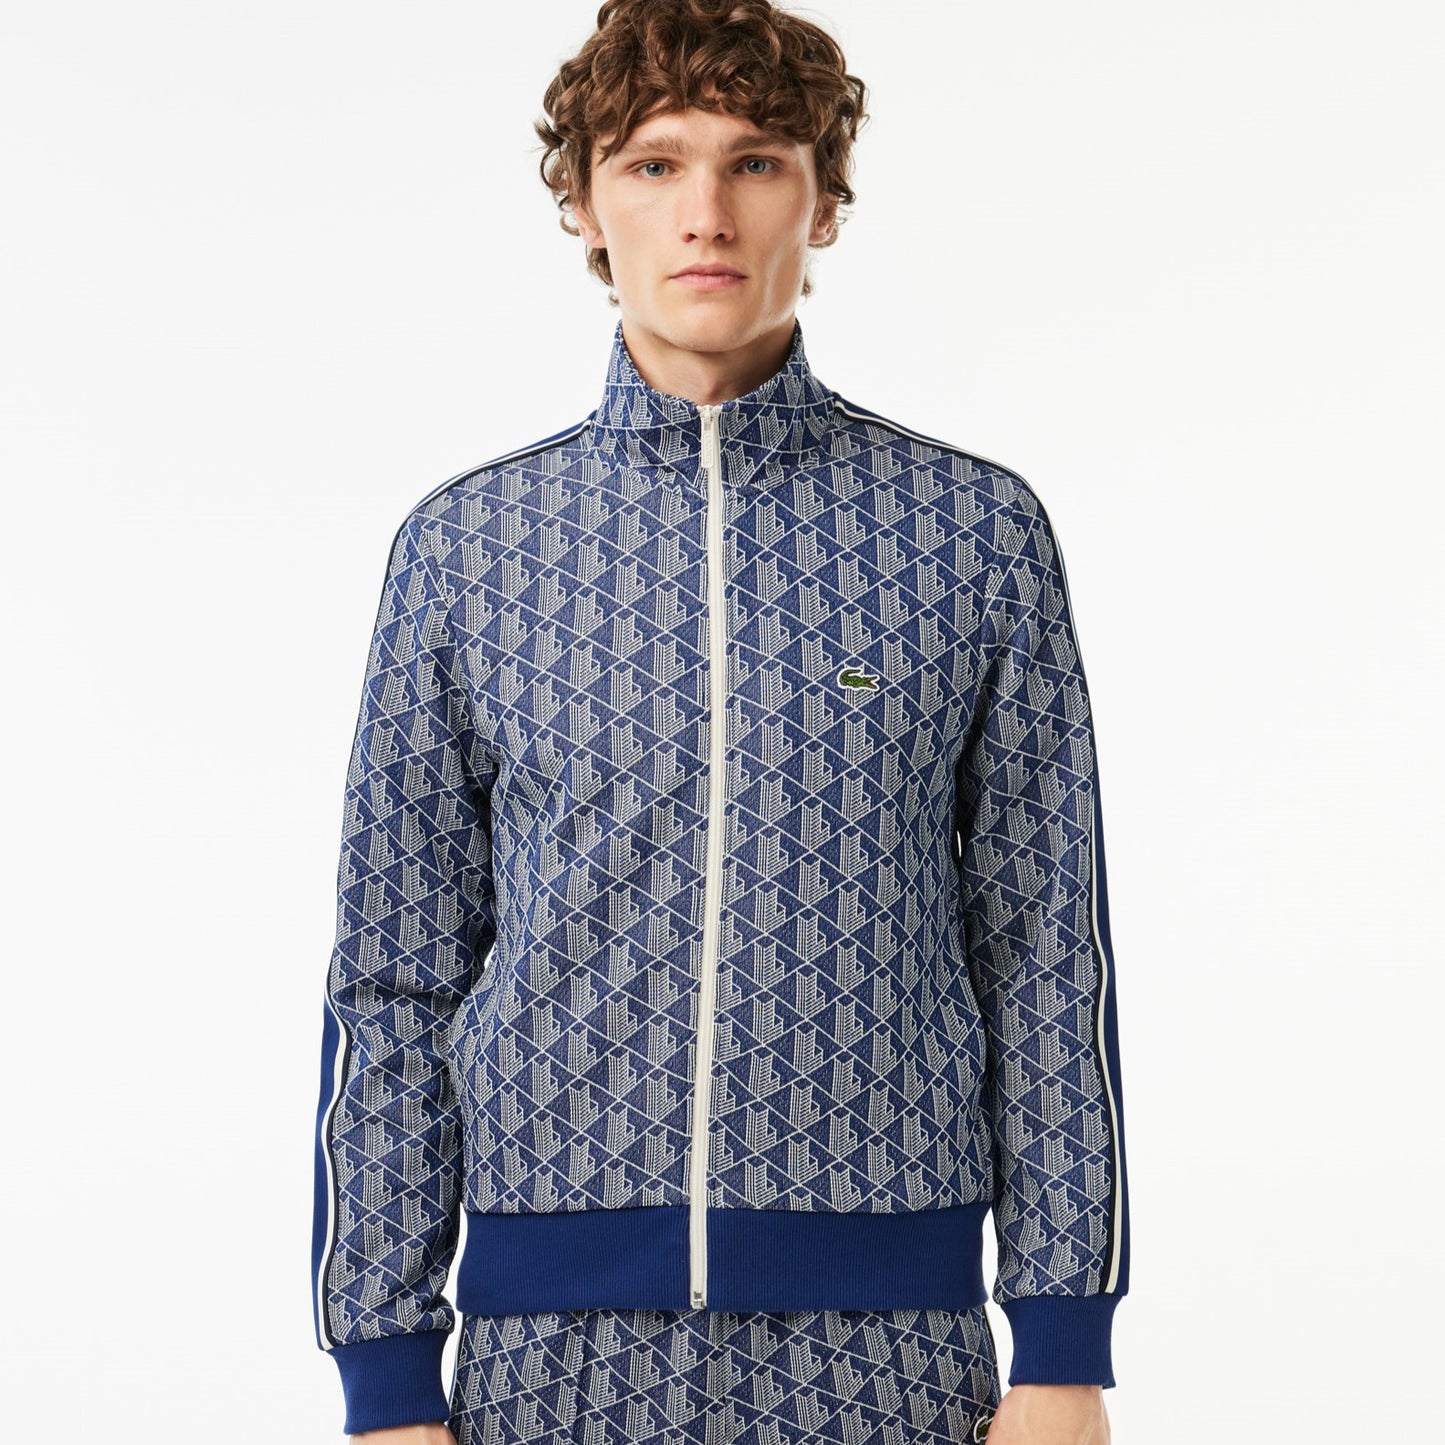 Lacoste Men's Full Zip Sweatshirt